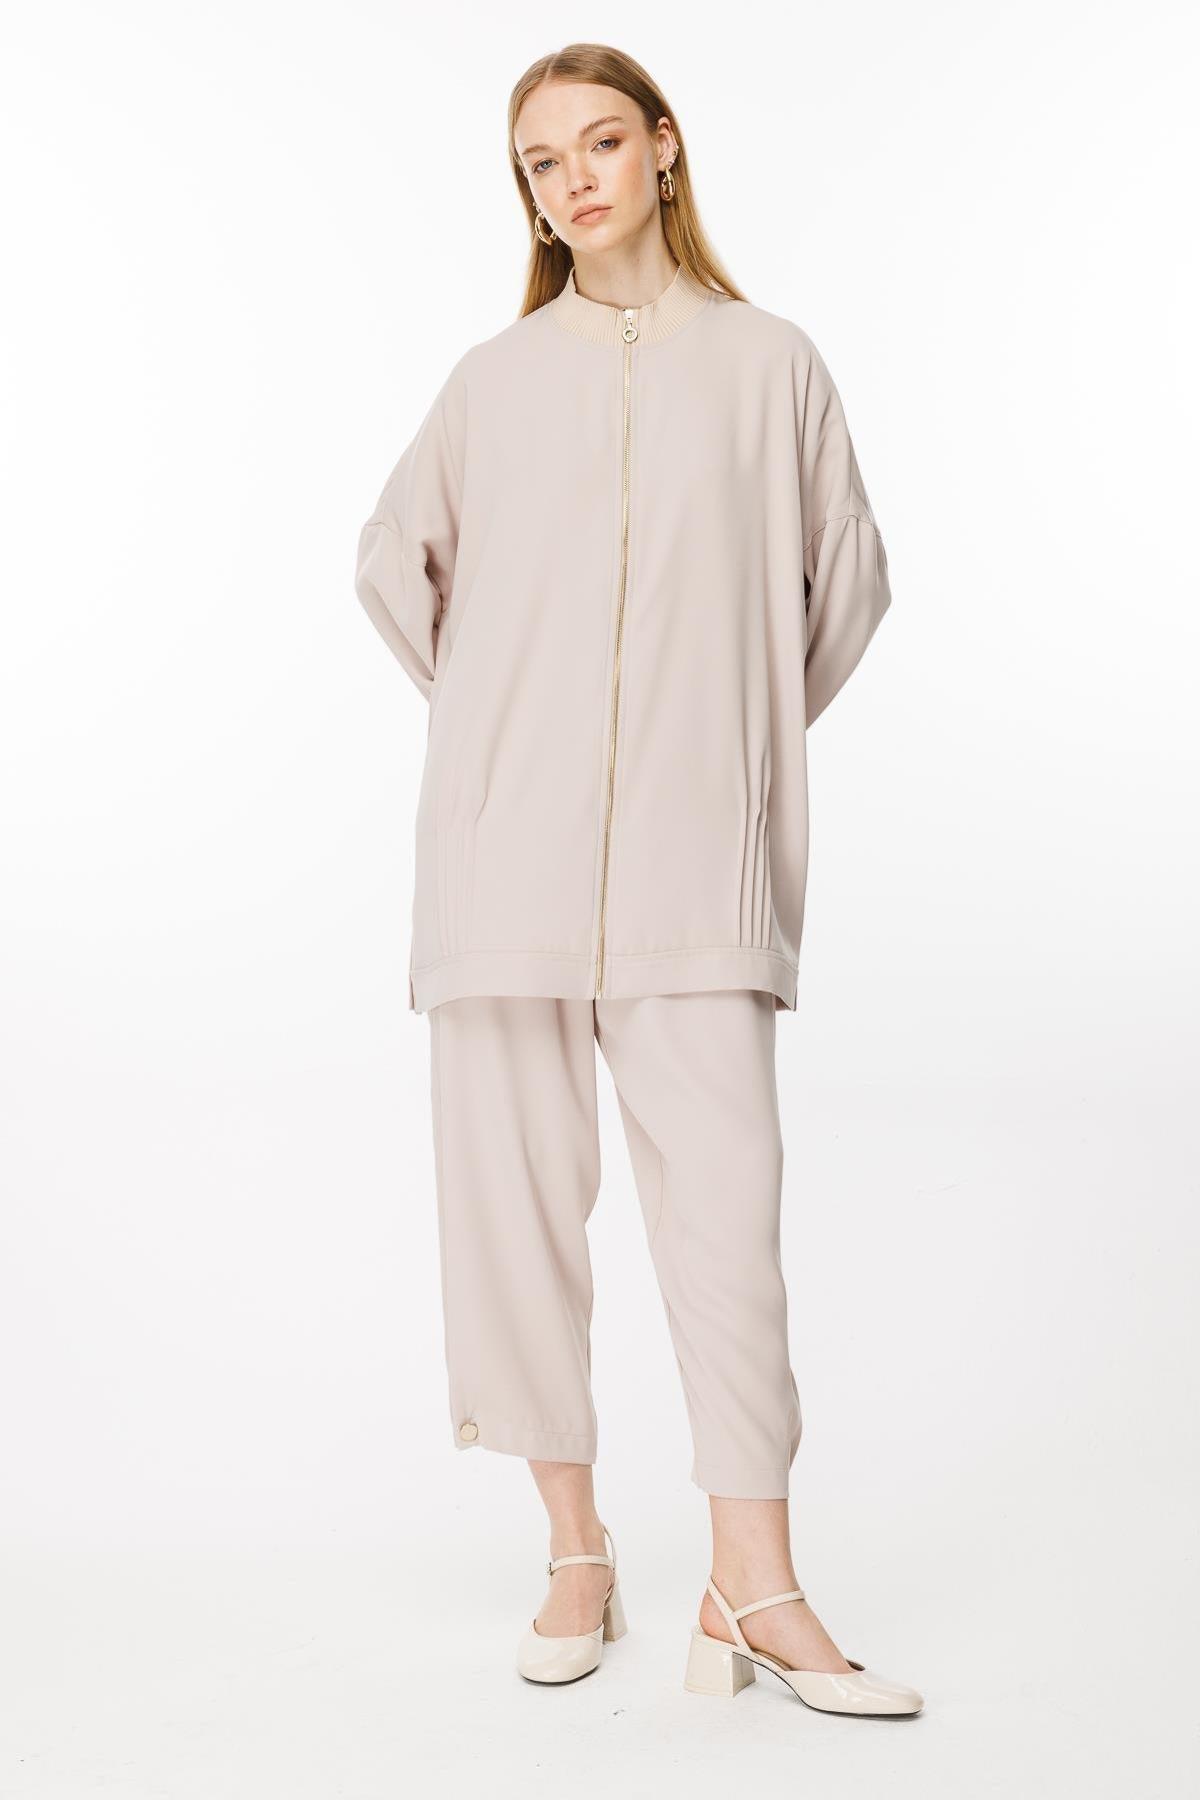 Fermuarlı Tunik Pantolon Takım - Eser Giyim